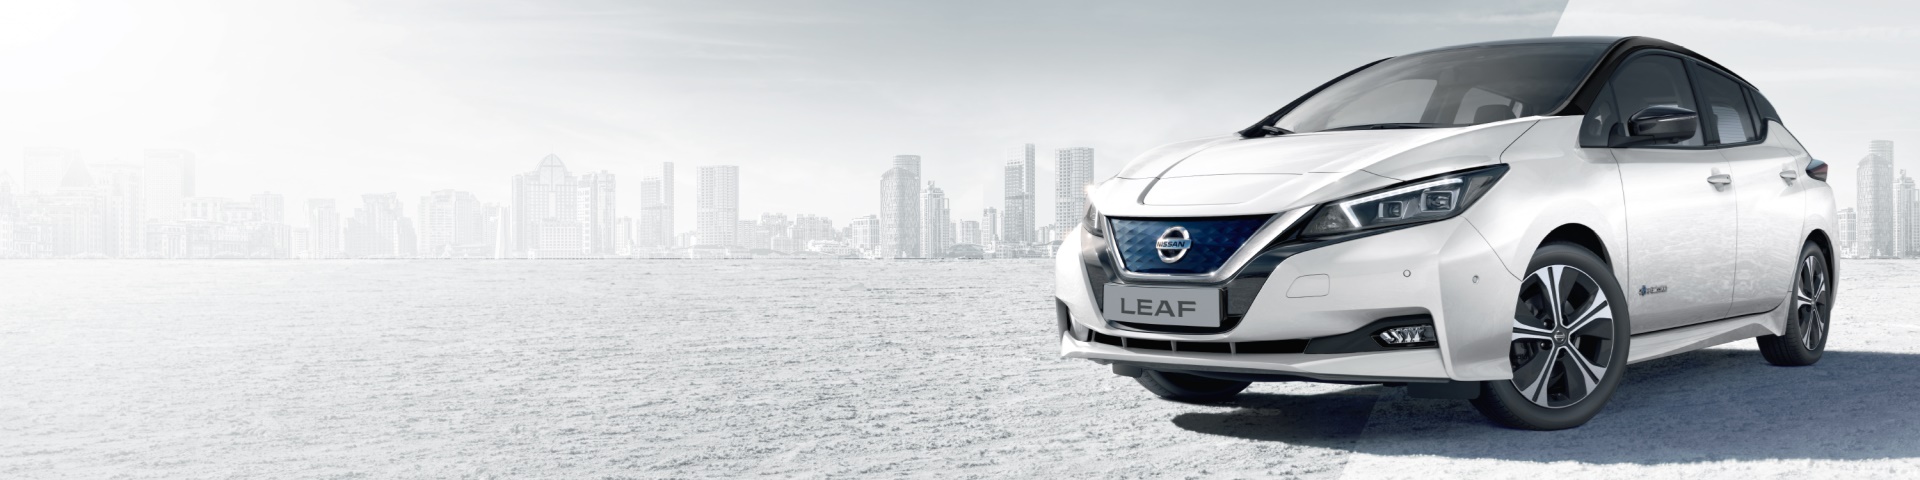 Méltó utód? Nissan Leaf 2.0 teszt